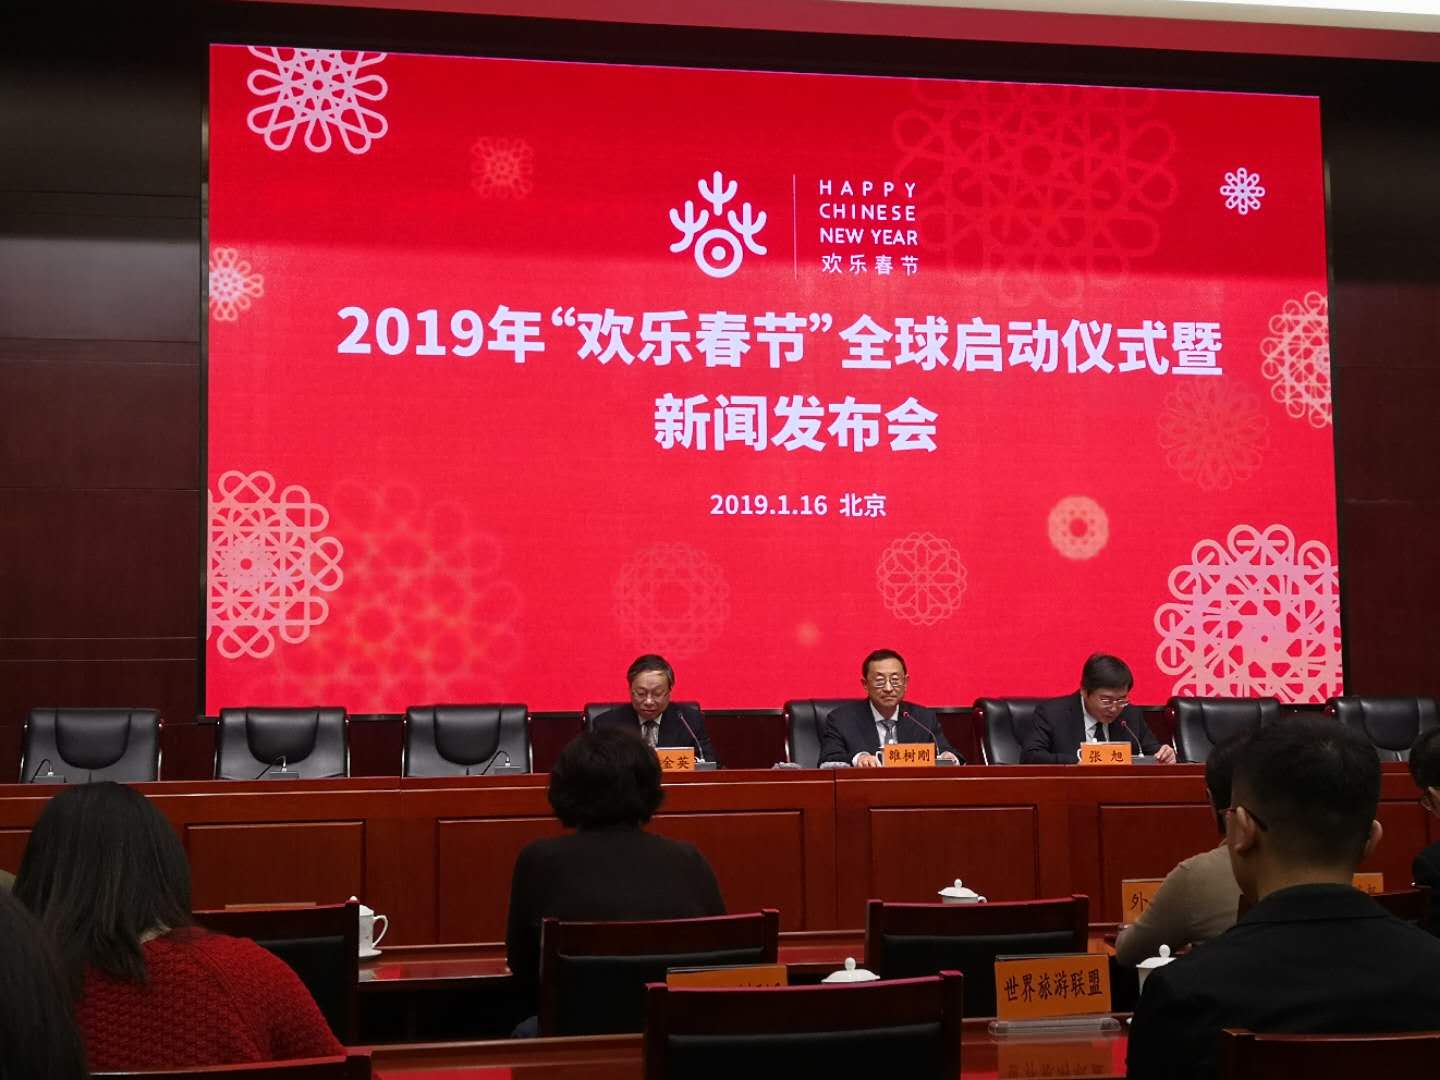 2019年全球“欢乐春节”活动正式启动